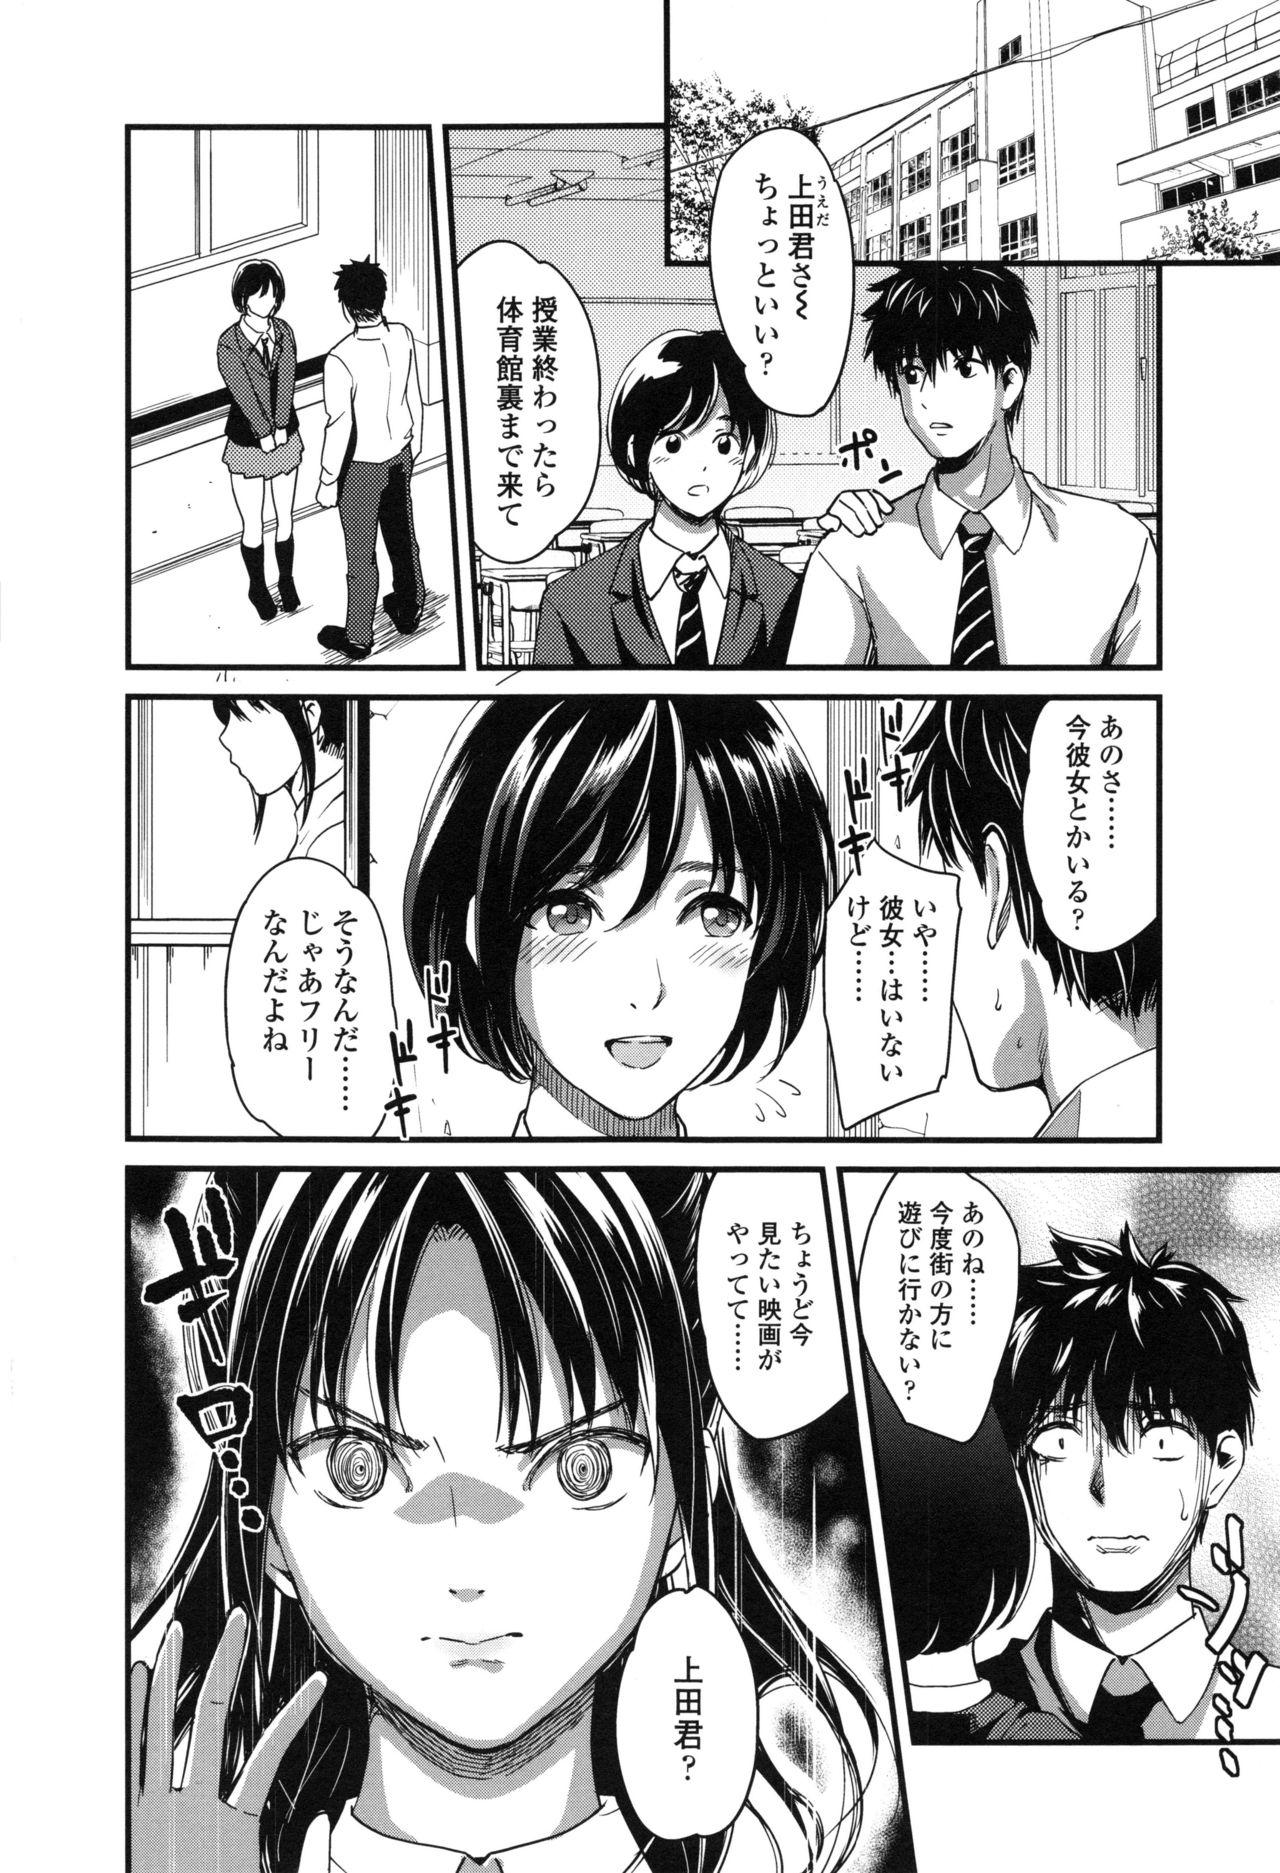 Seifuku no Mama Aishinasai! - Love in school uniform 29